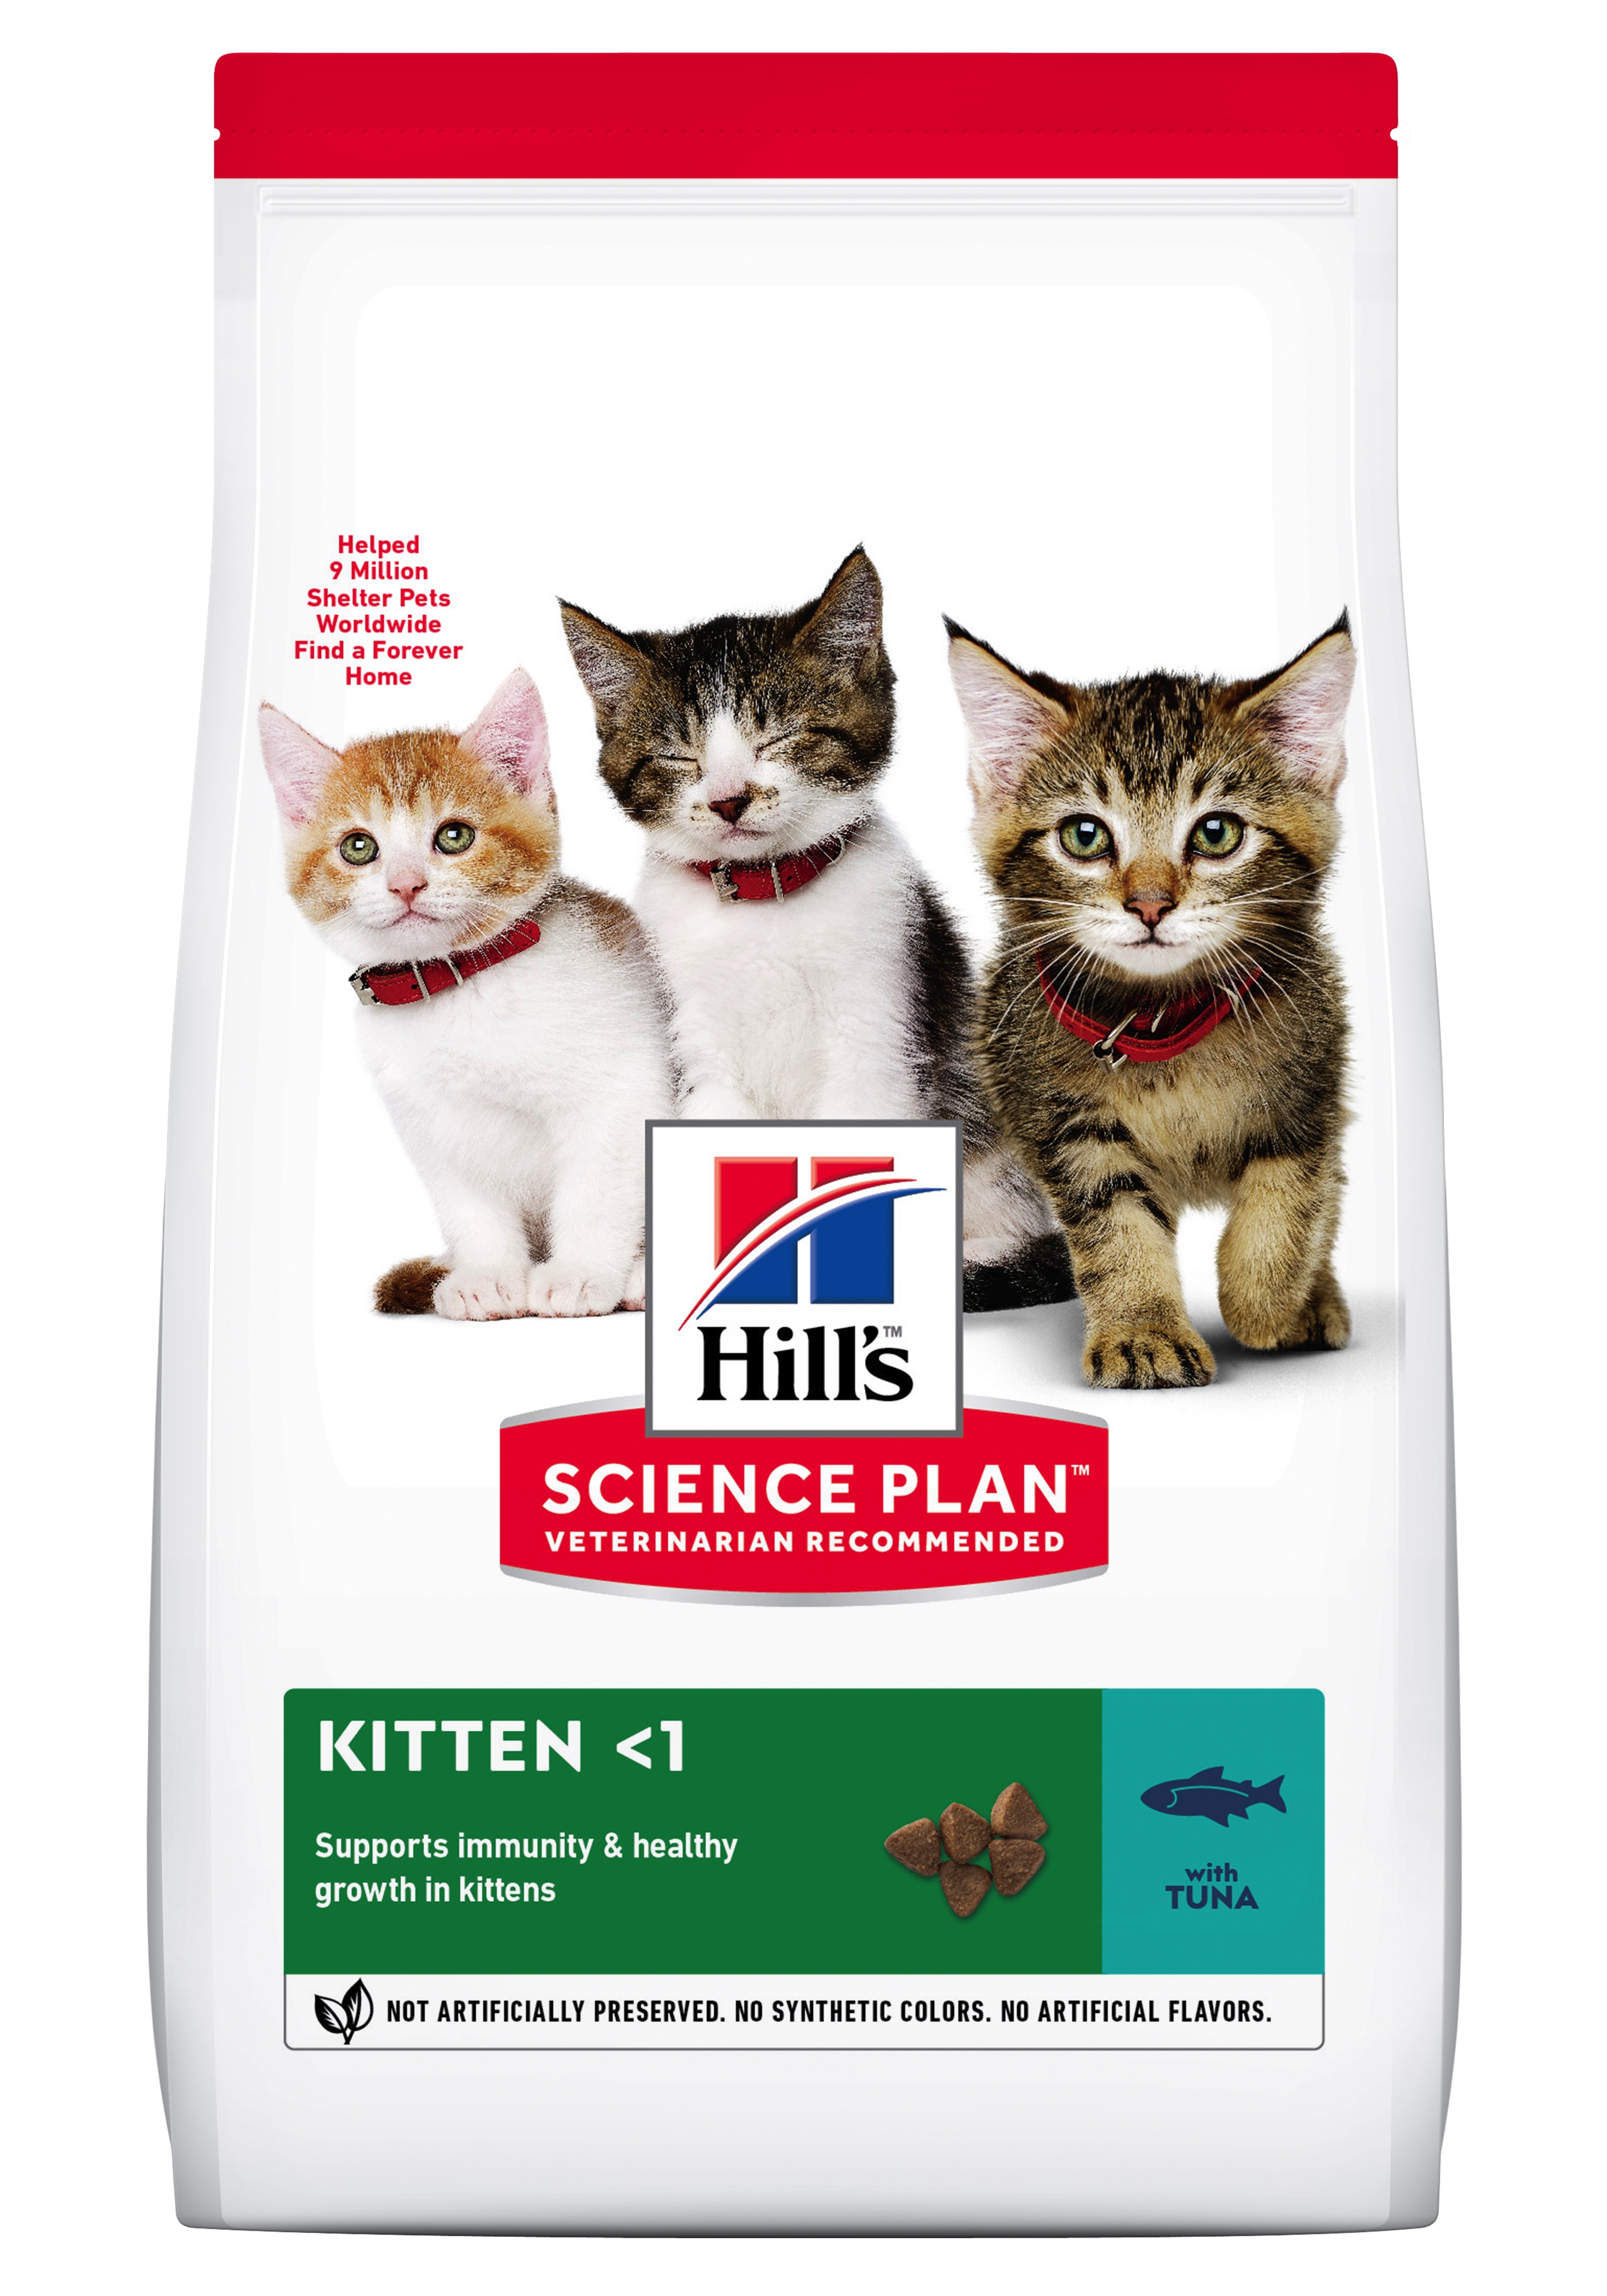 Hill's Science Plan Kat. Kitten with Tuna. Til killinger op til 1år.